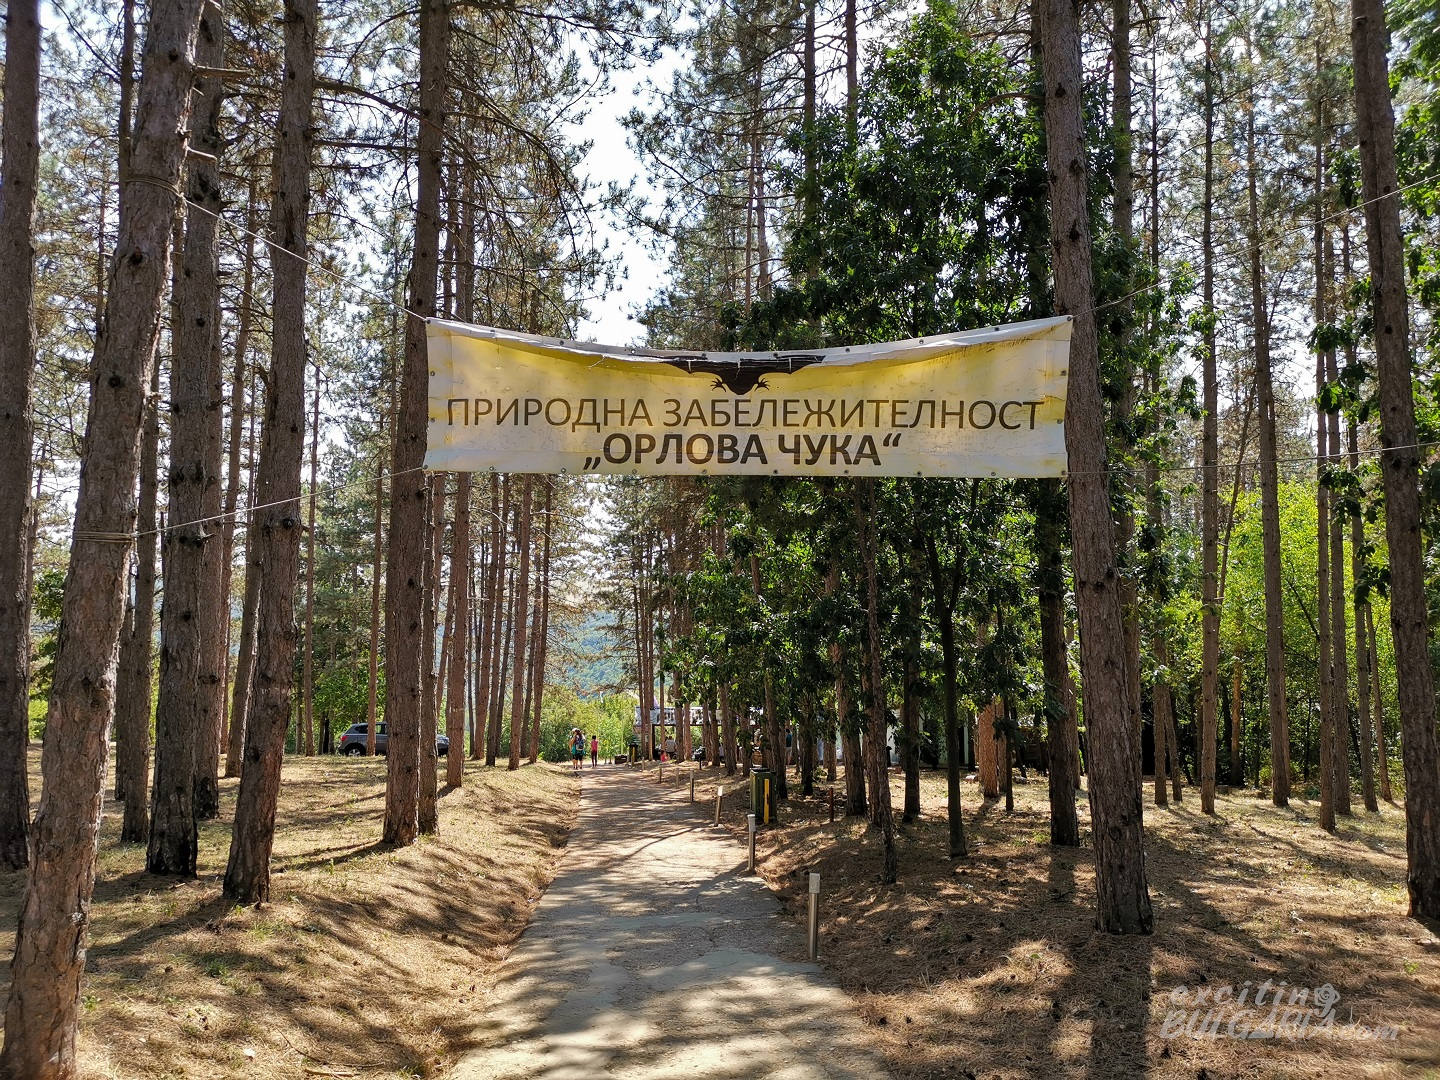 The path to Orlova Chuka Cave